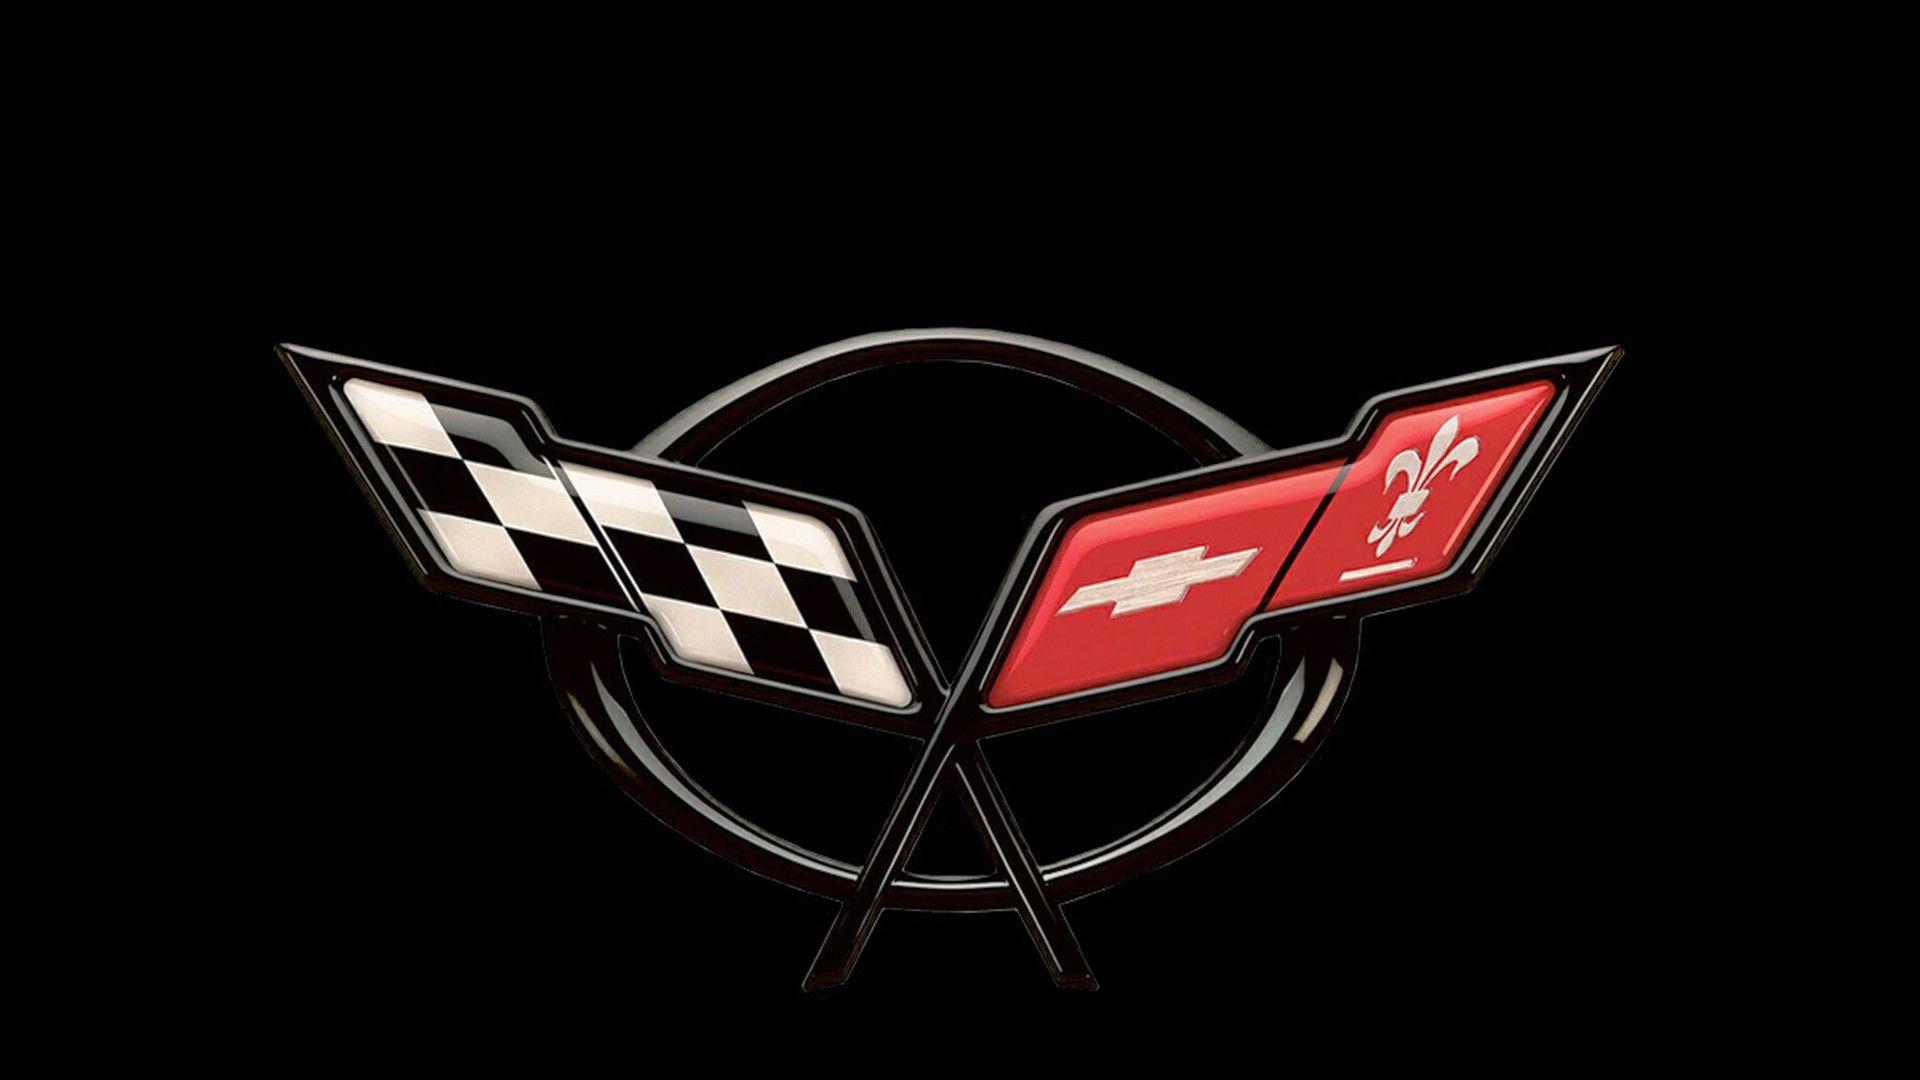 White Corvette Logo - Corvette Logo Wallpapers | PixelsTalk.Net